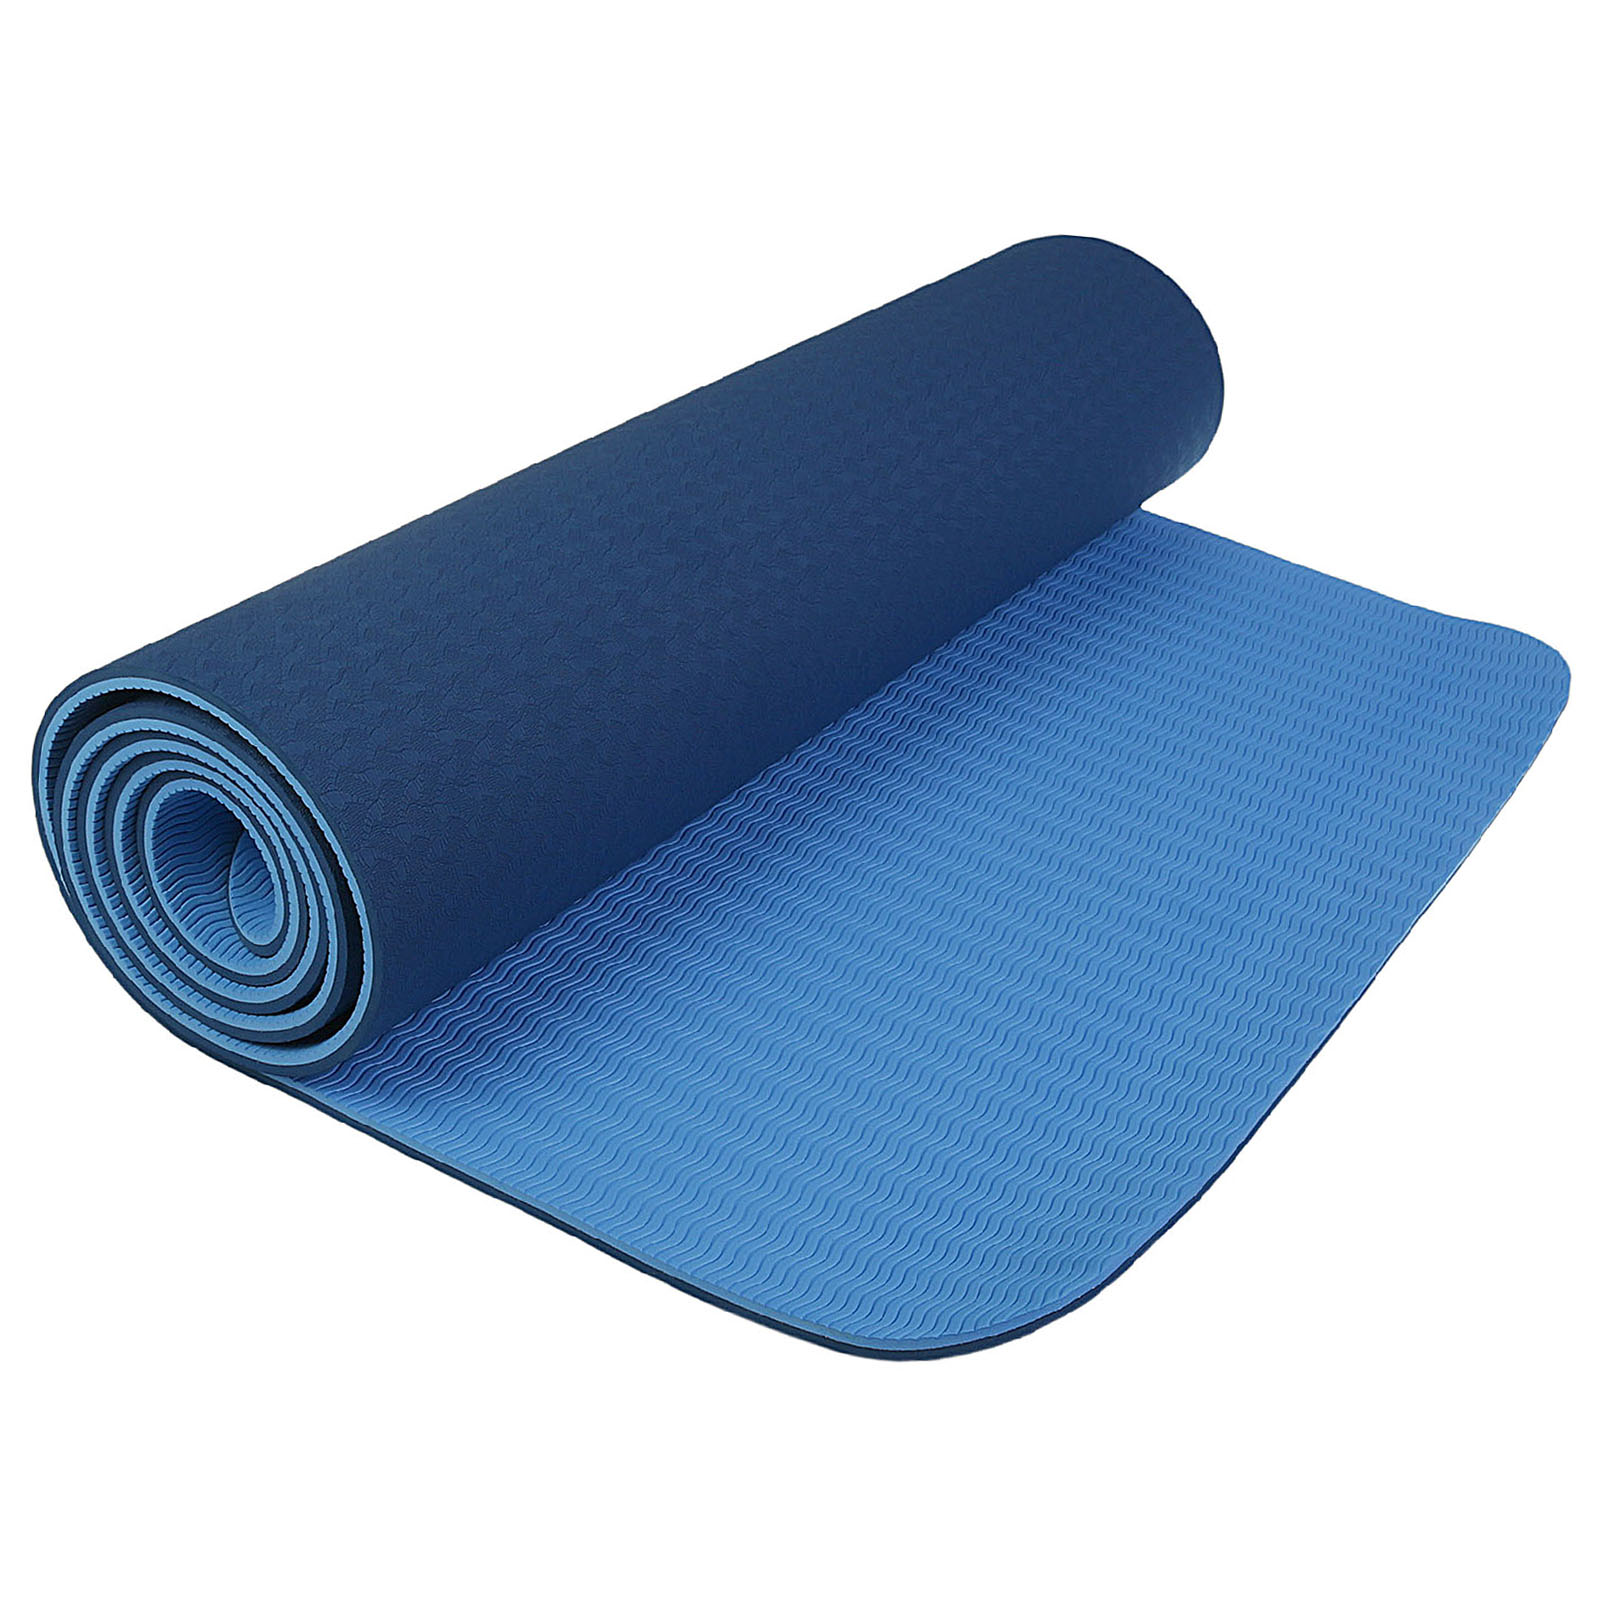 Коврик Sangh Для йоги двухцветный синий - фото 1